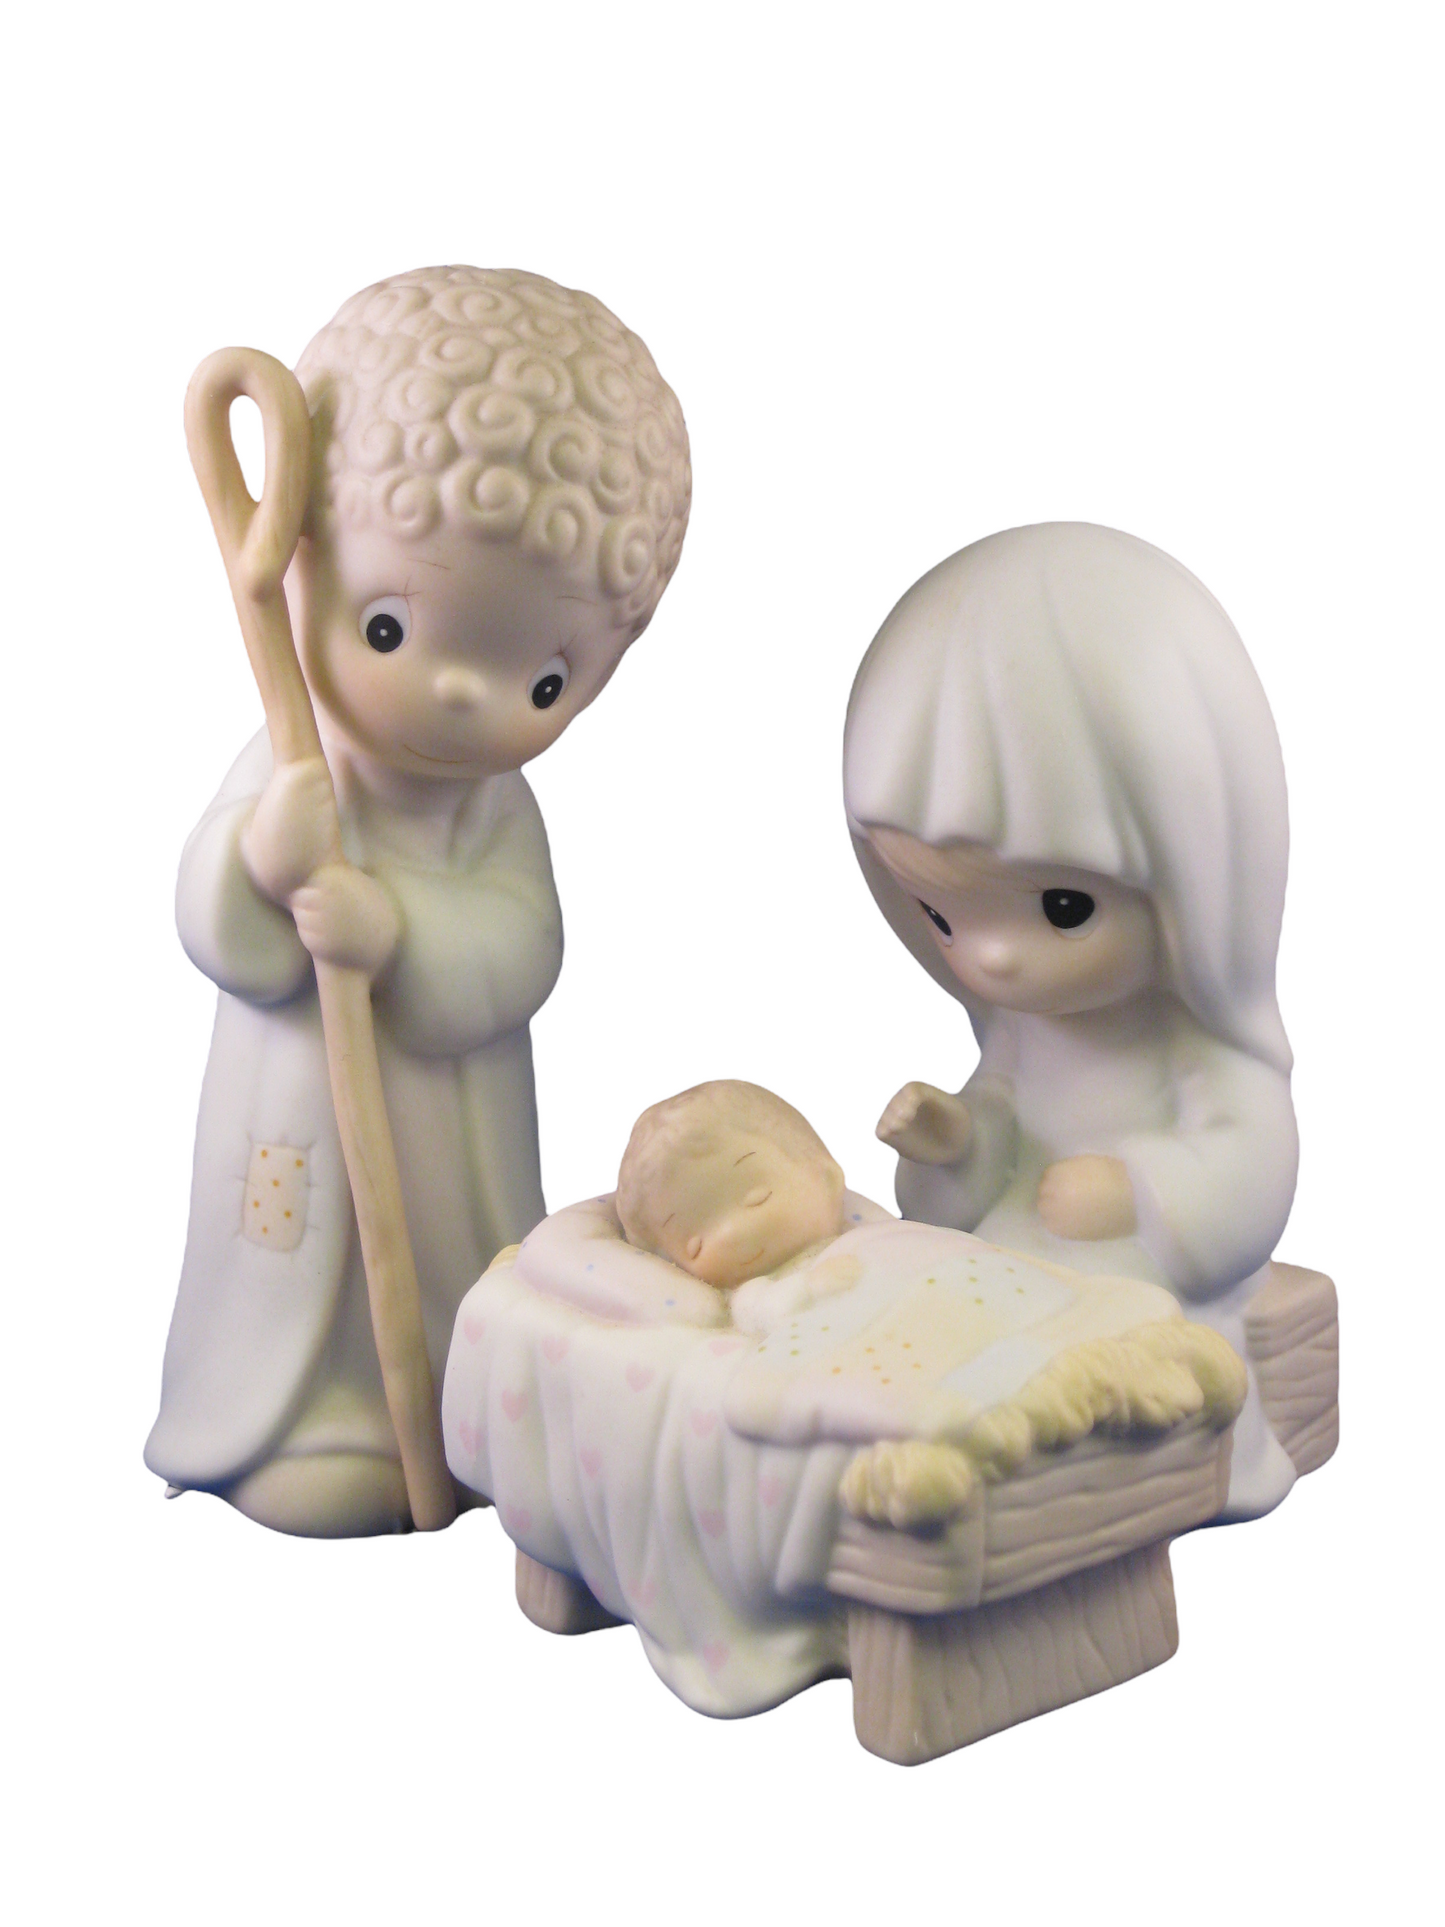 Come Let Us Adore Him (Three-Piece Nativity) - Precious Moment Figurines